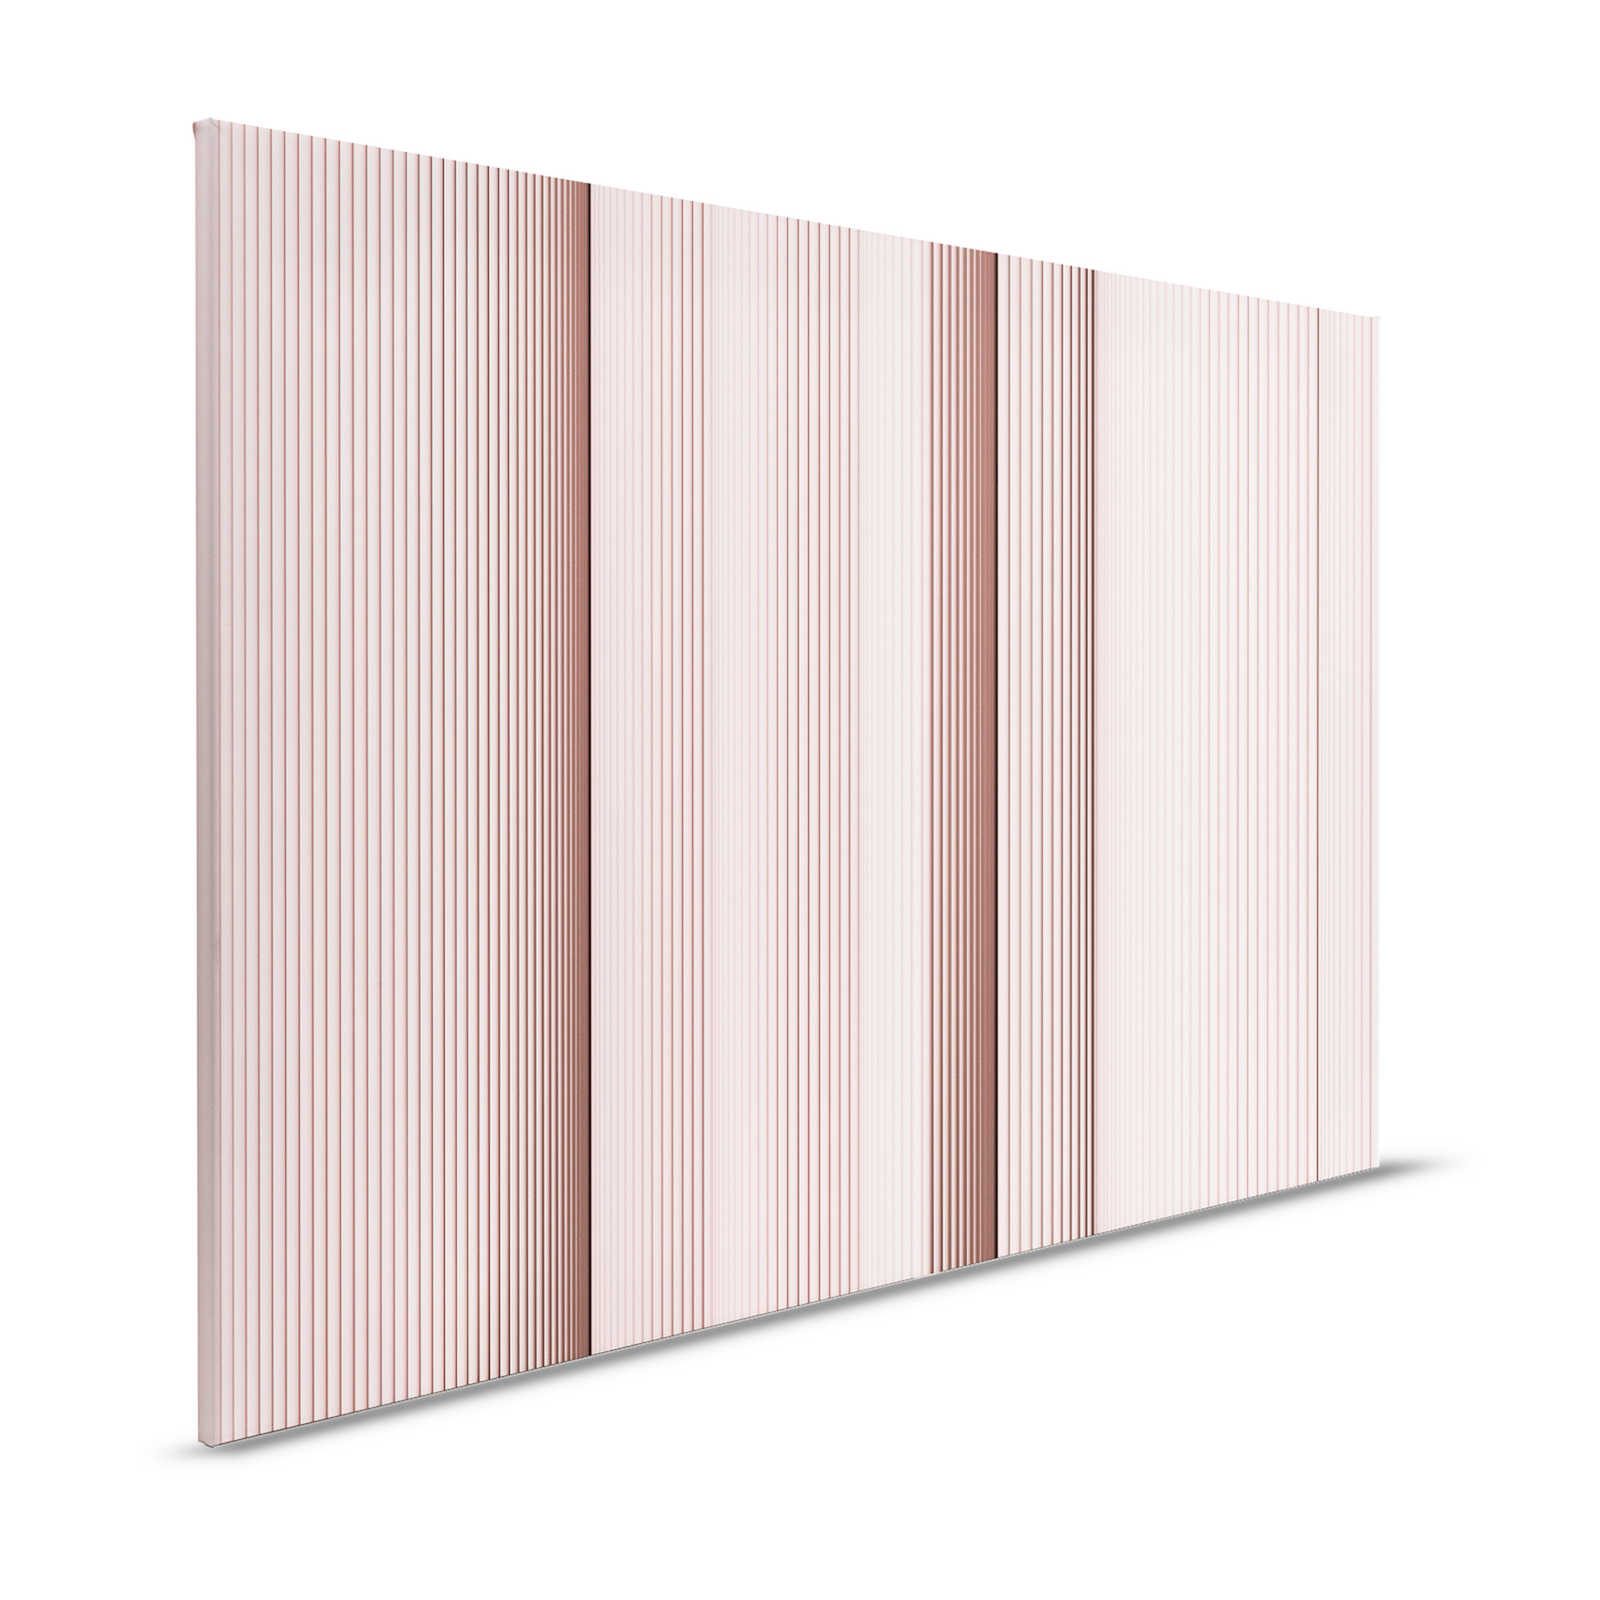 Magic Wall 4 - Lienzo a rayas con efecto ilusión 3D, rosa y blanco - 1,20 m x 0,80 m
